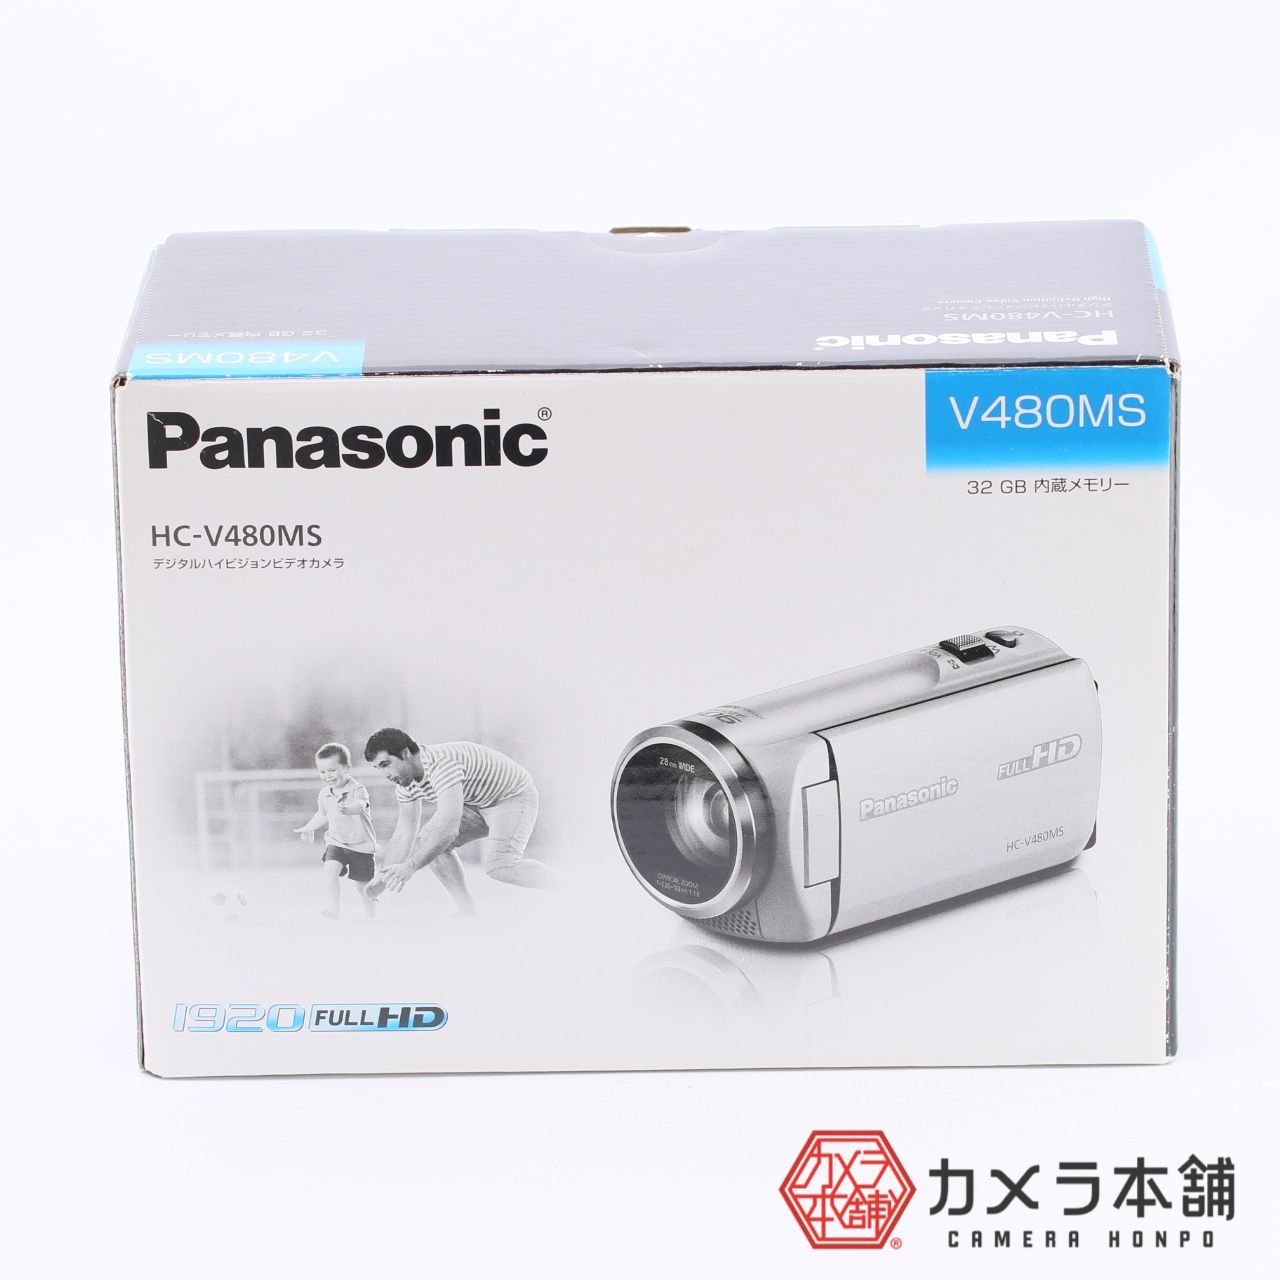 未使用 Panasonic HC-V480MS-W 送料無料でお届けします - ビデオカメラ